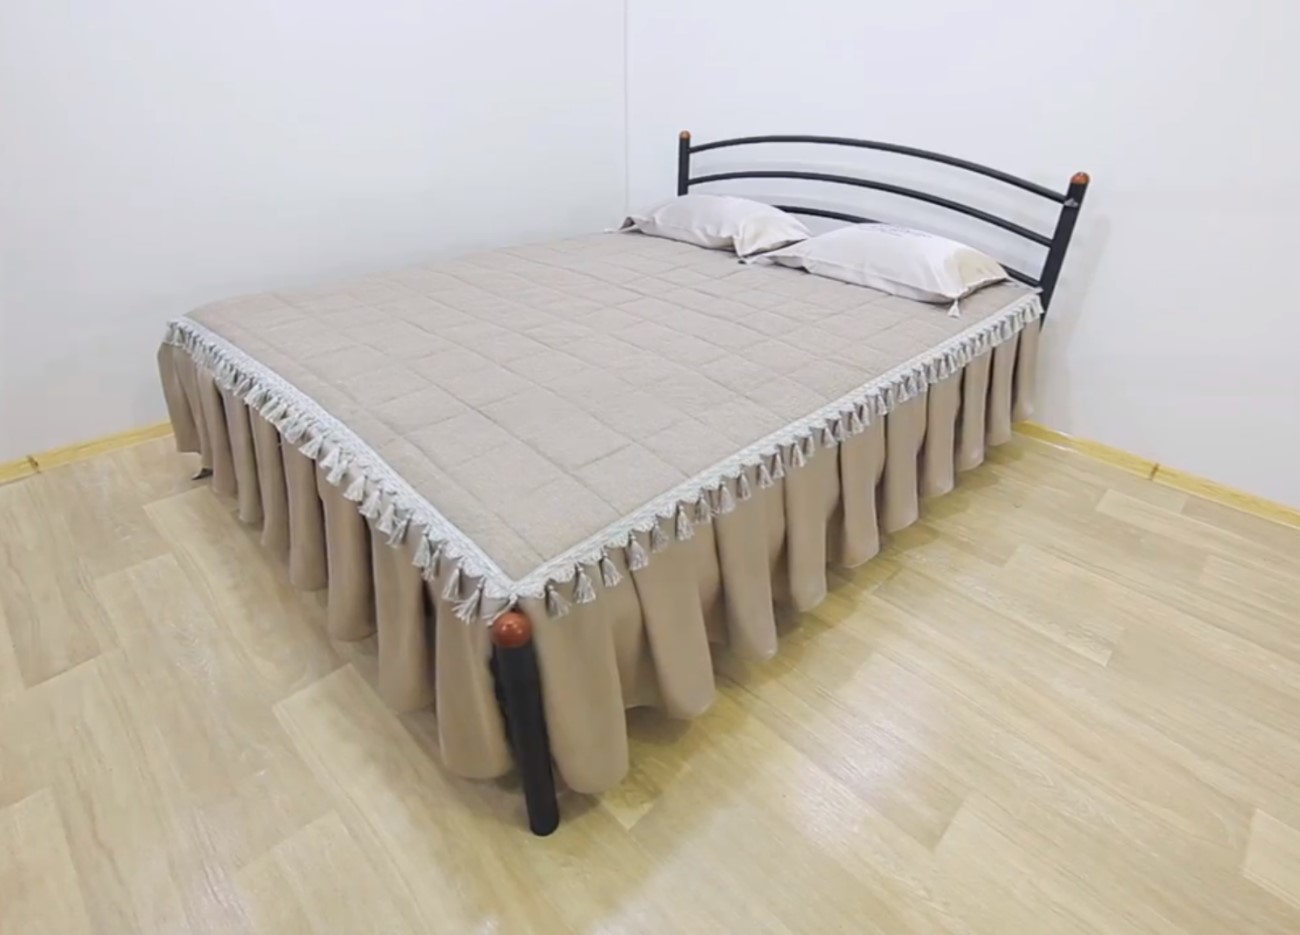 Металлическая кровать Маргарита